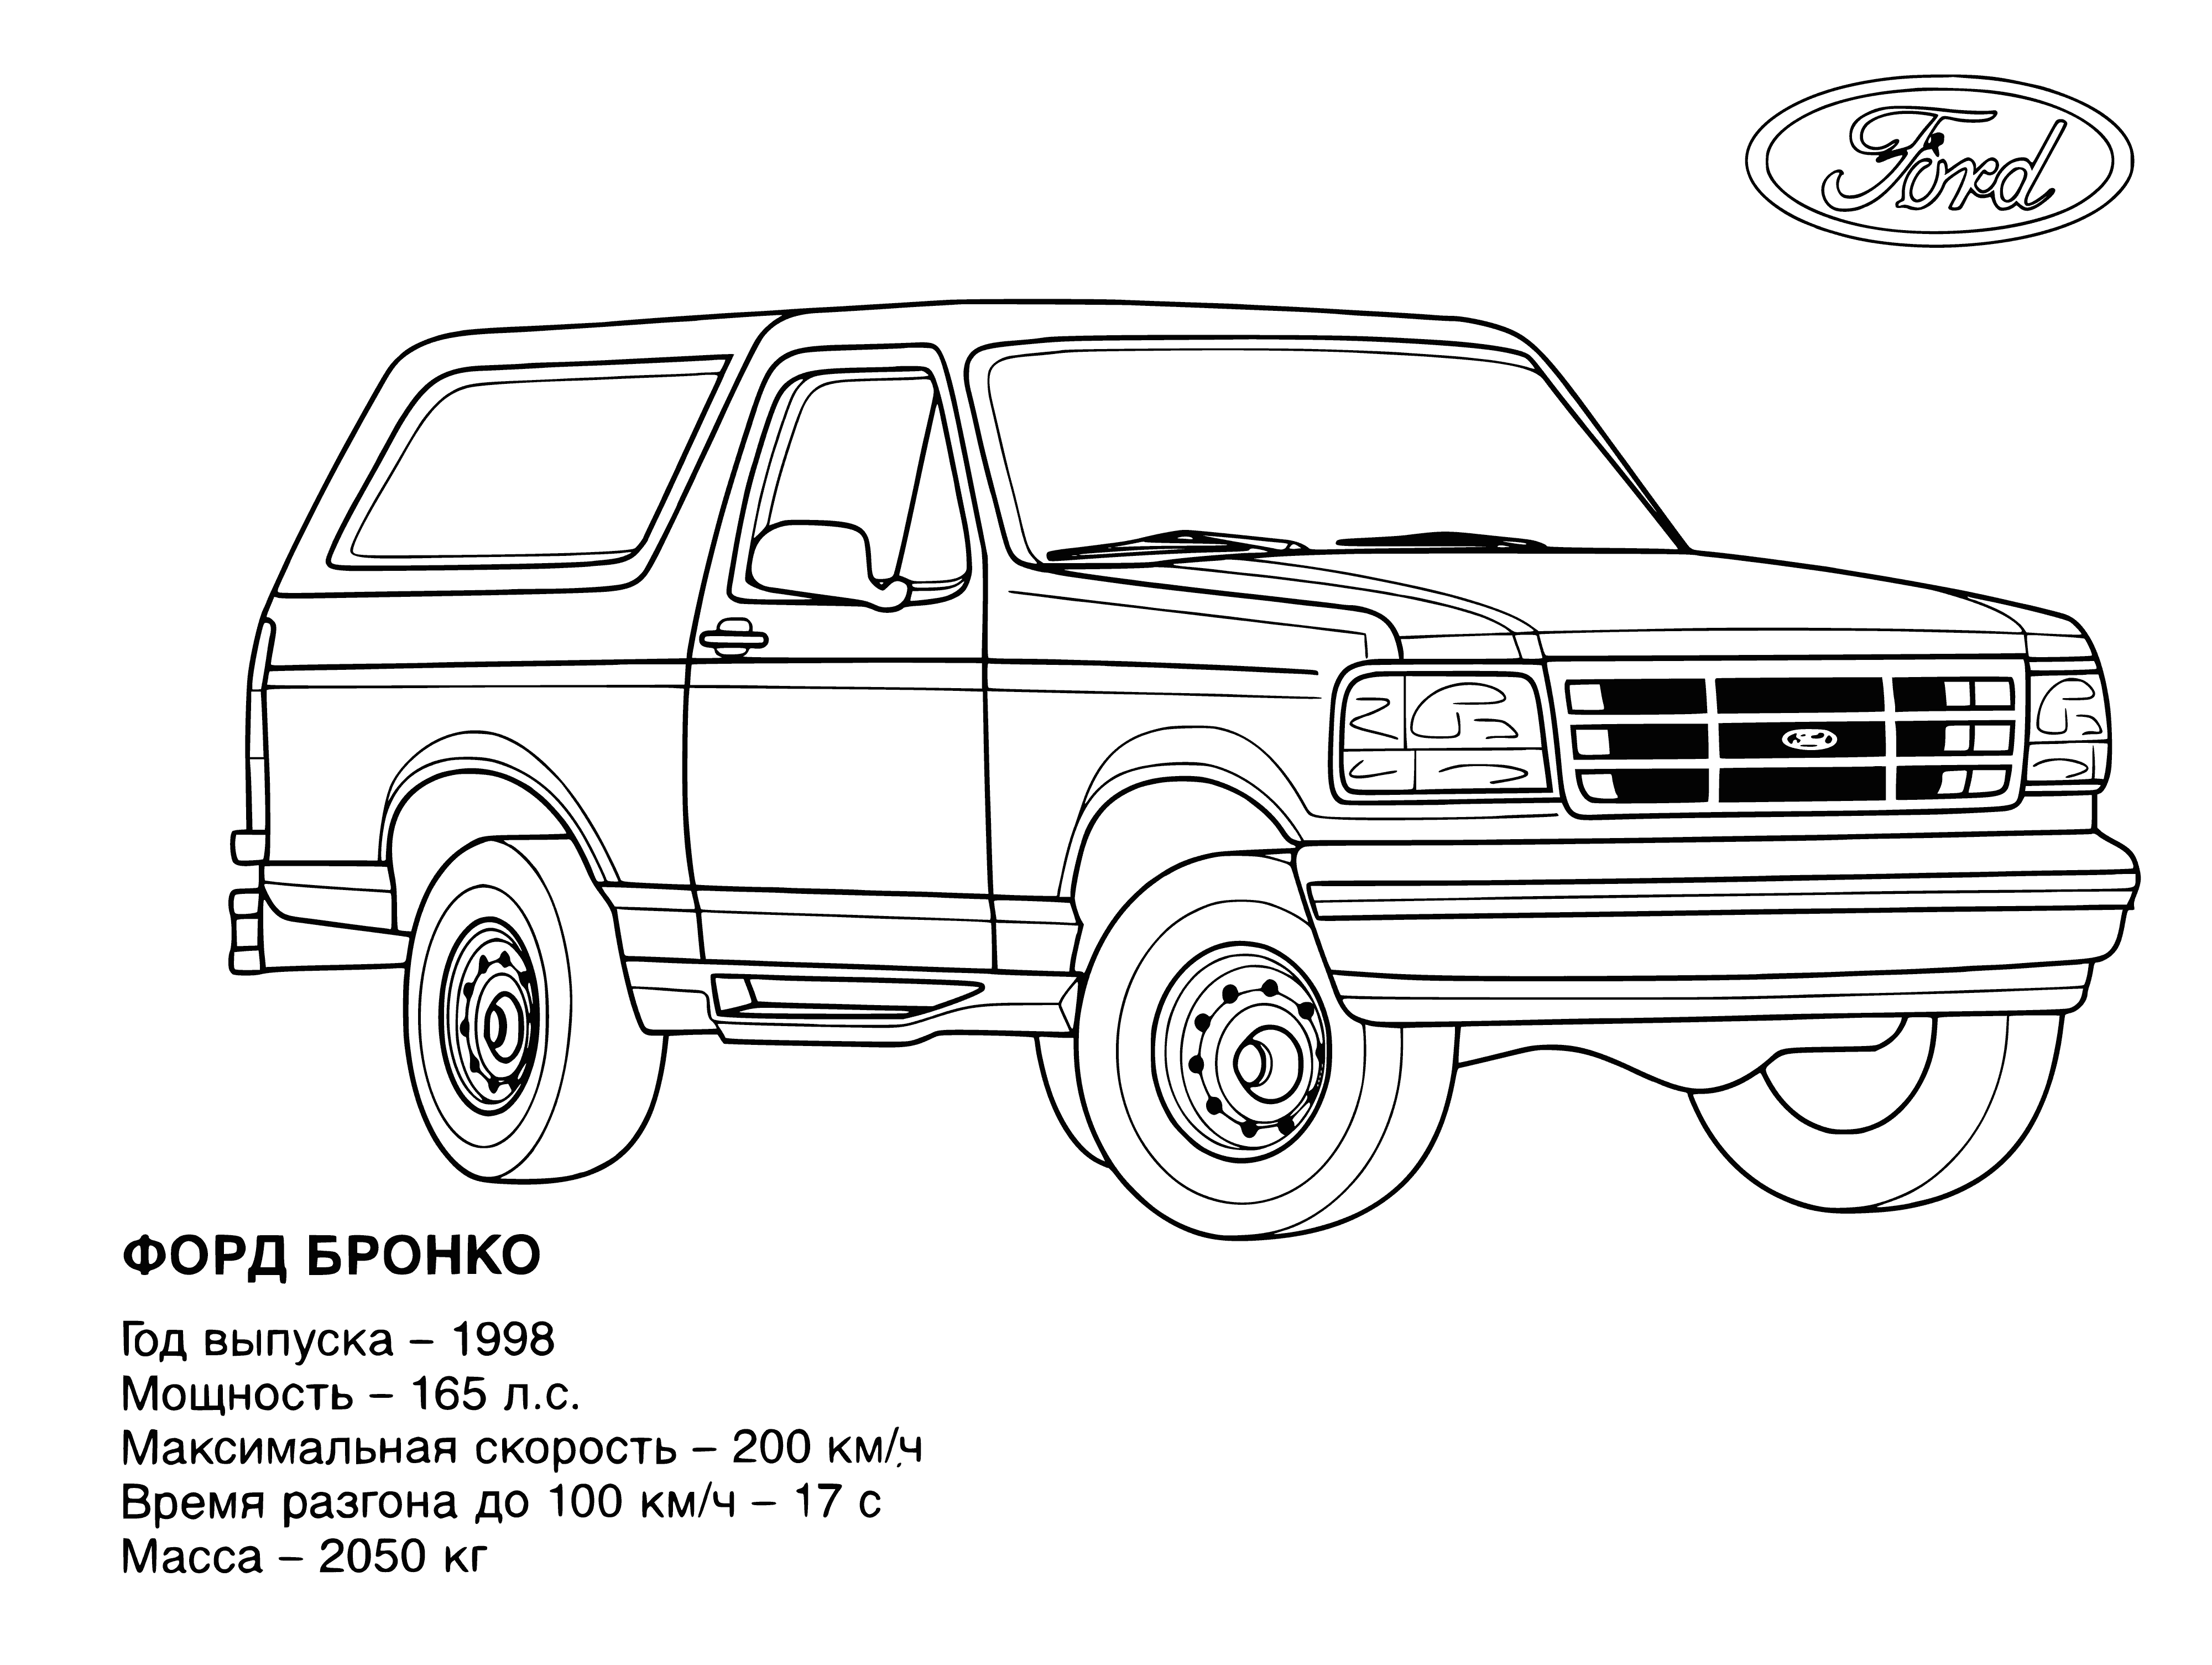 Ford boyama sayfası